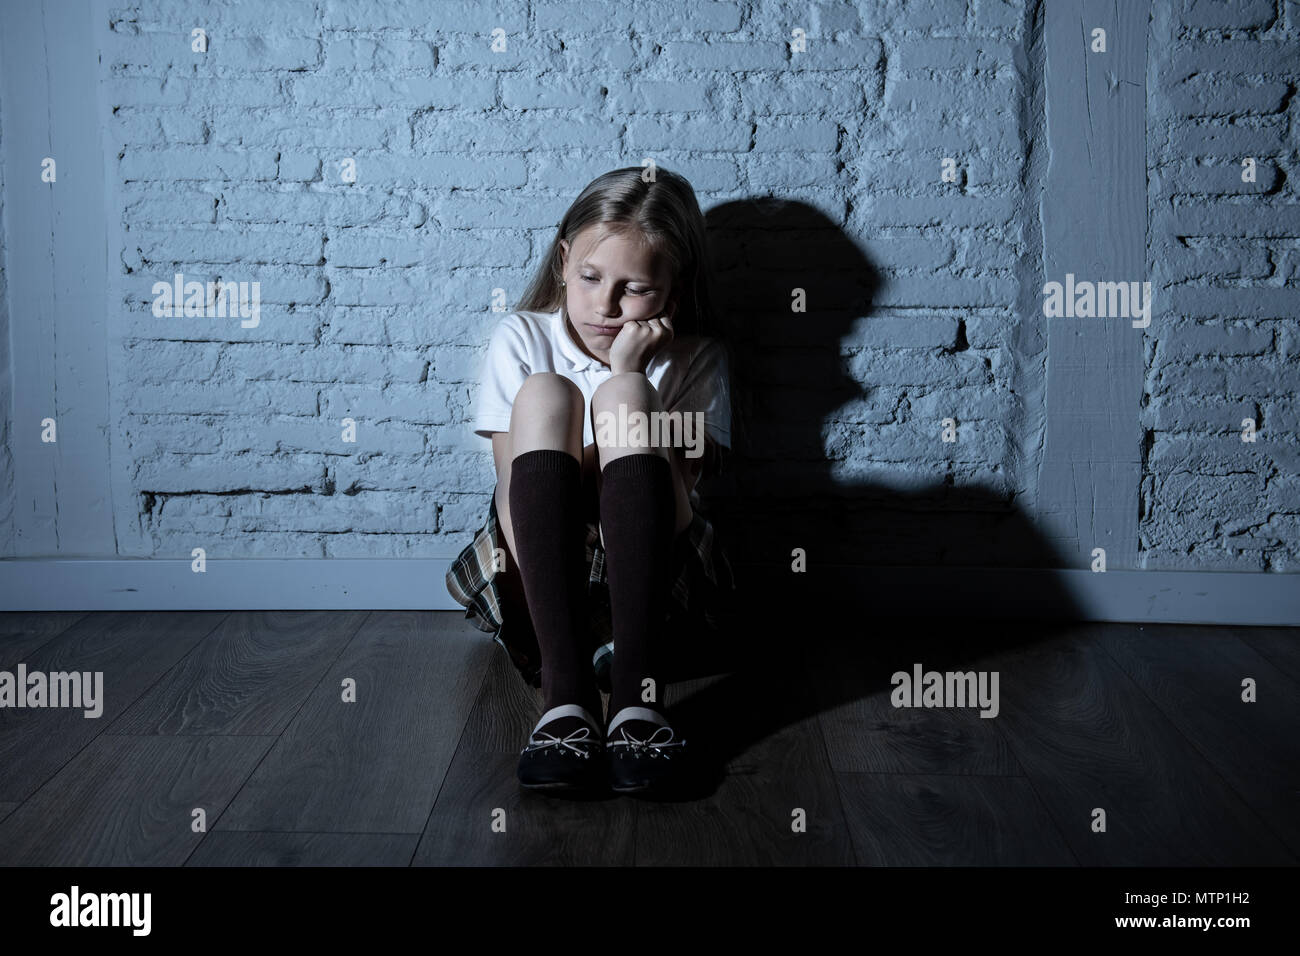 Désespérément triste jeune fille souffrant de bulling et abattage harcèlement seul, malheureux et sans espoir désespéré assis contre le mur, Lumière sombre. Sc Banque D'Images